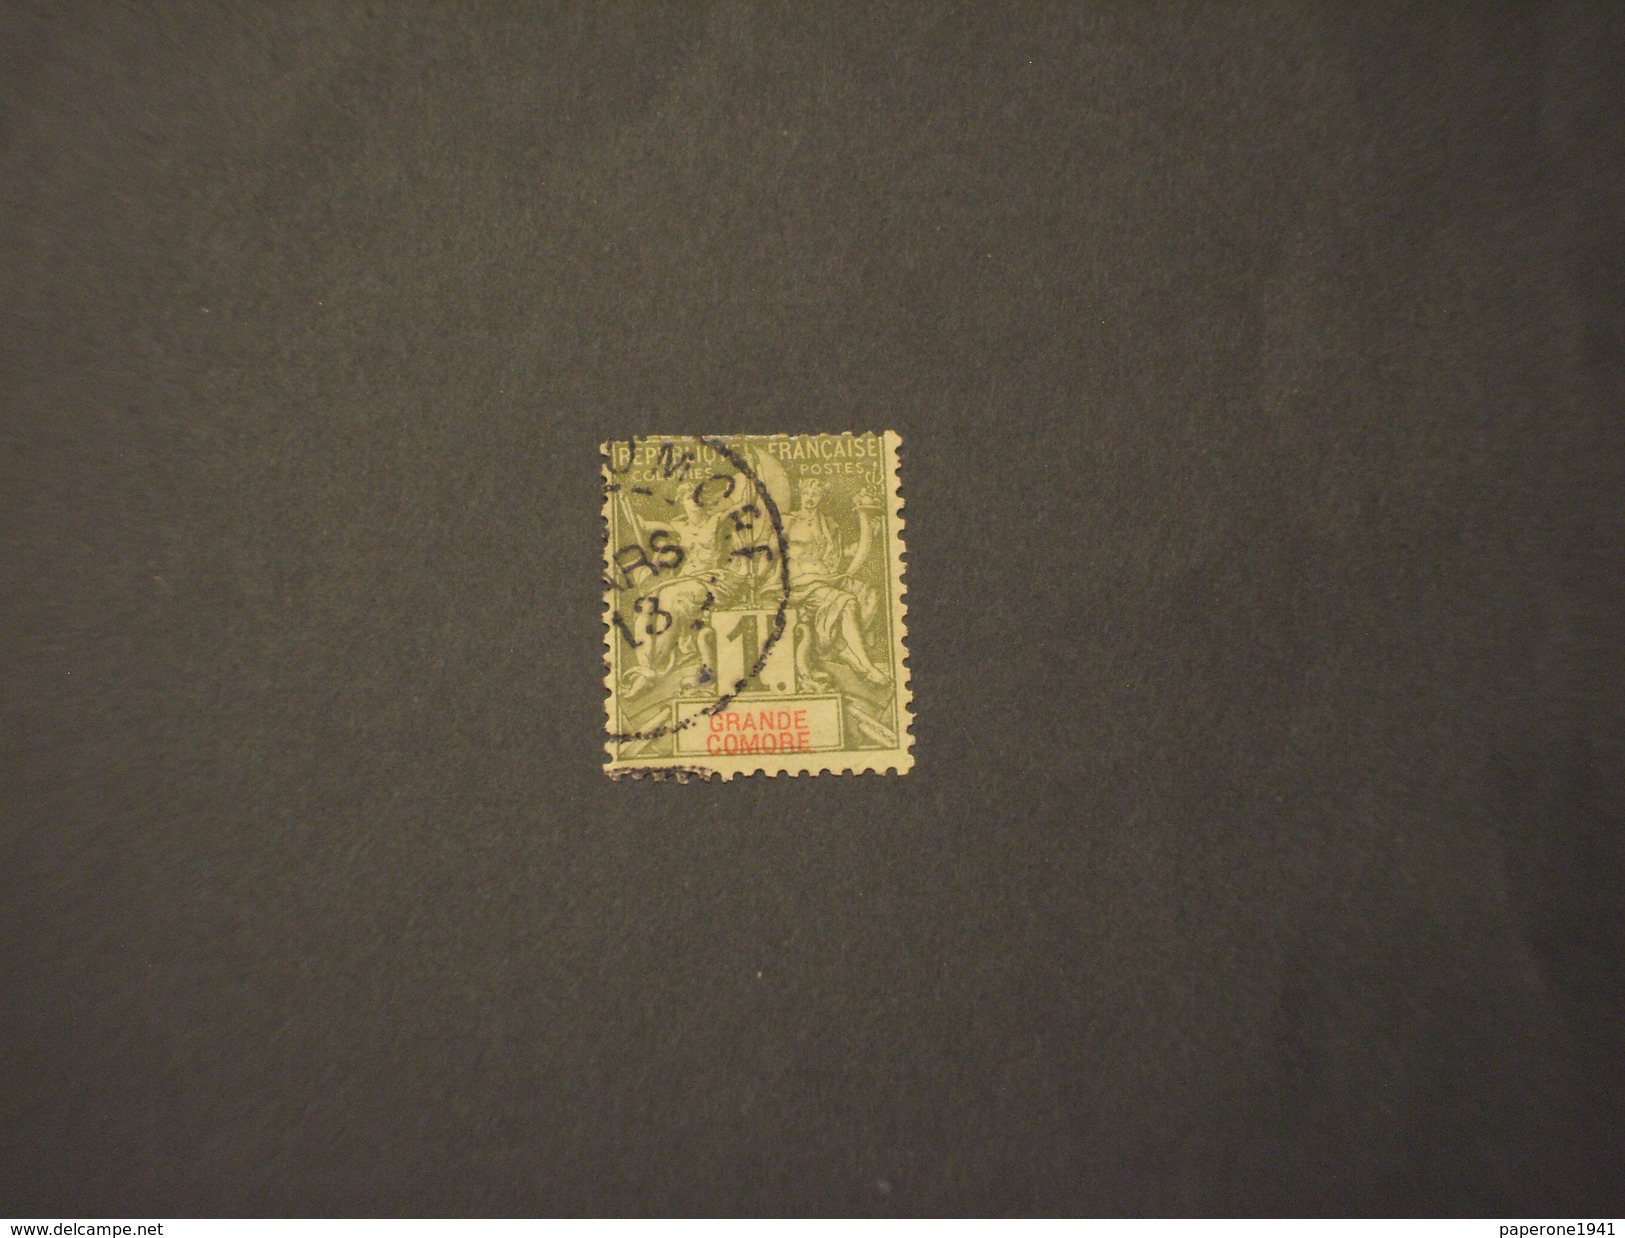 GRANDE COMORE - 1897 ALLEGORIA  1 F. - TIMBRATO/USED - Used Stamps